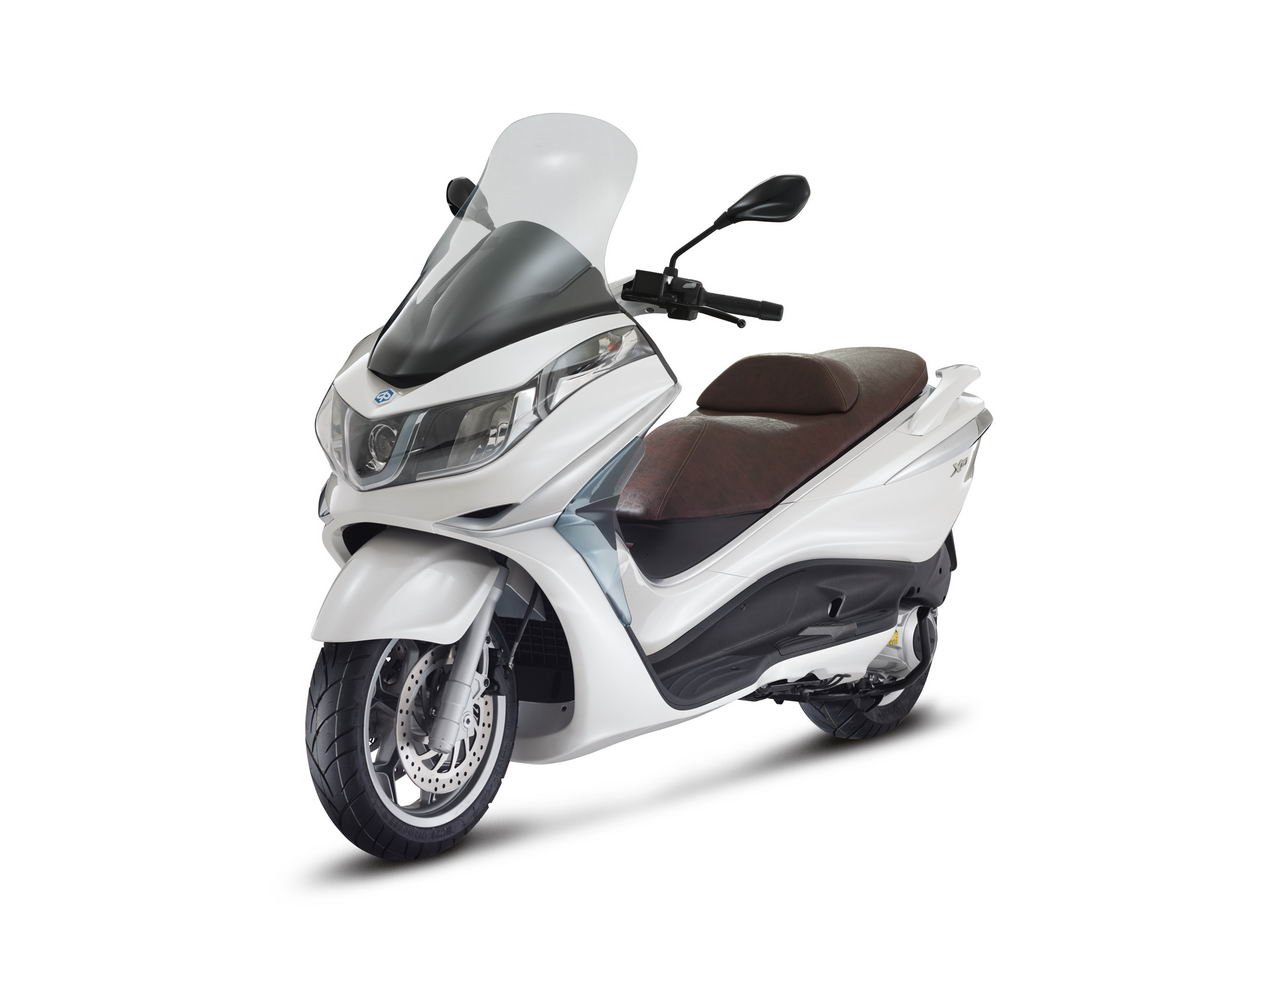 Listino Piaggio X 10 350 Scooter oltre 300 - image 15140_piaggio-x10-350 on https://moto.motori.net